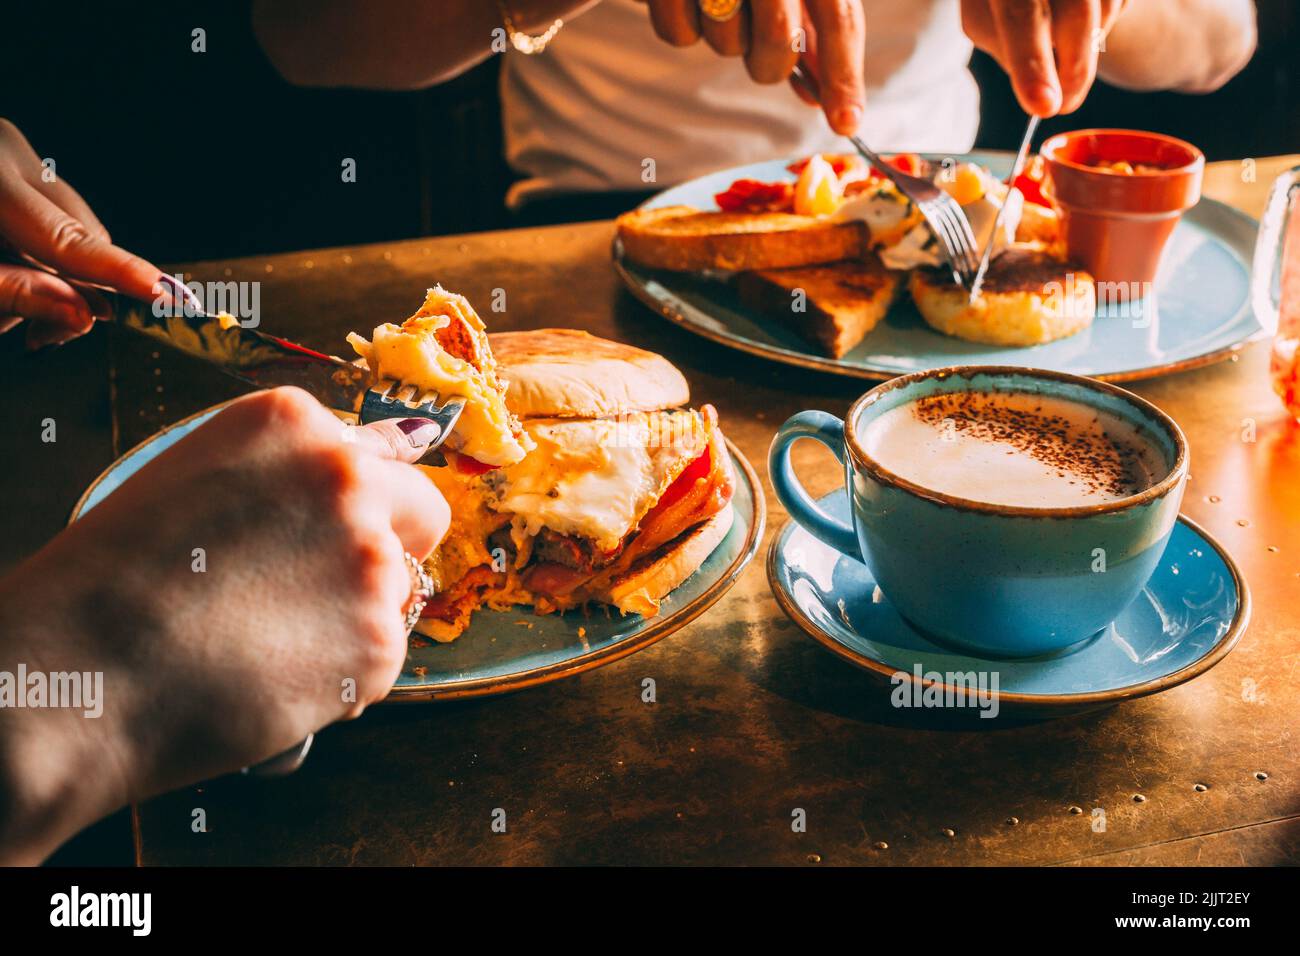 Das gesichtslose Paar, das in einem Restaurant mit Kaffee zu Mittag gegessen hat Stockfoto